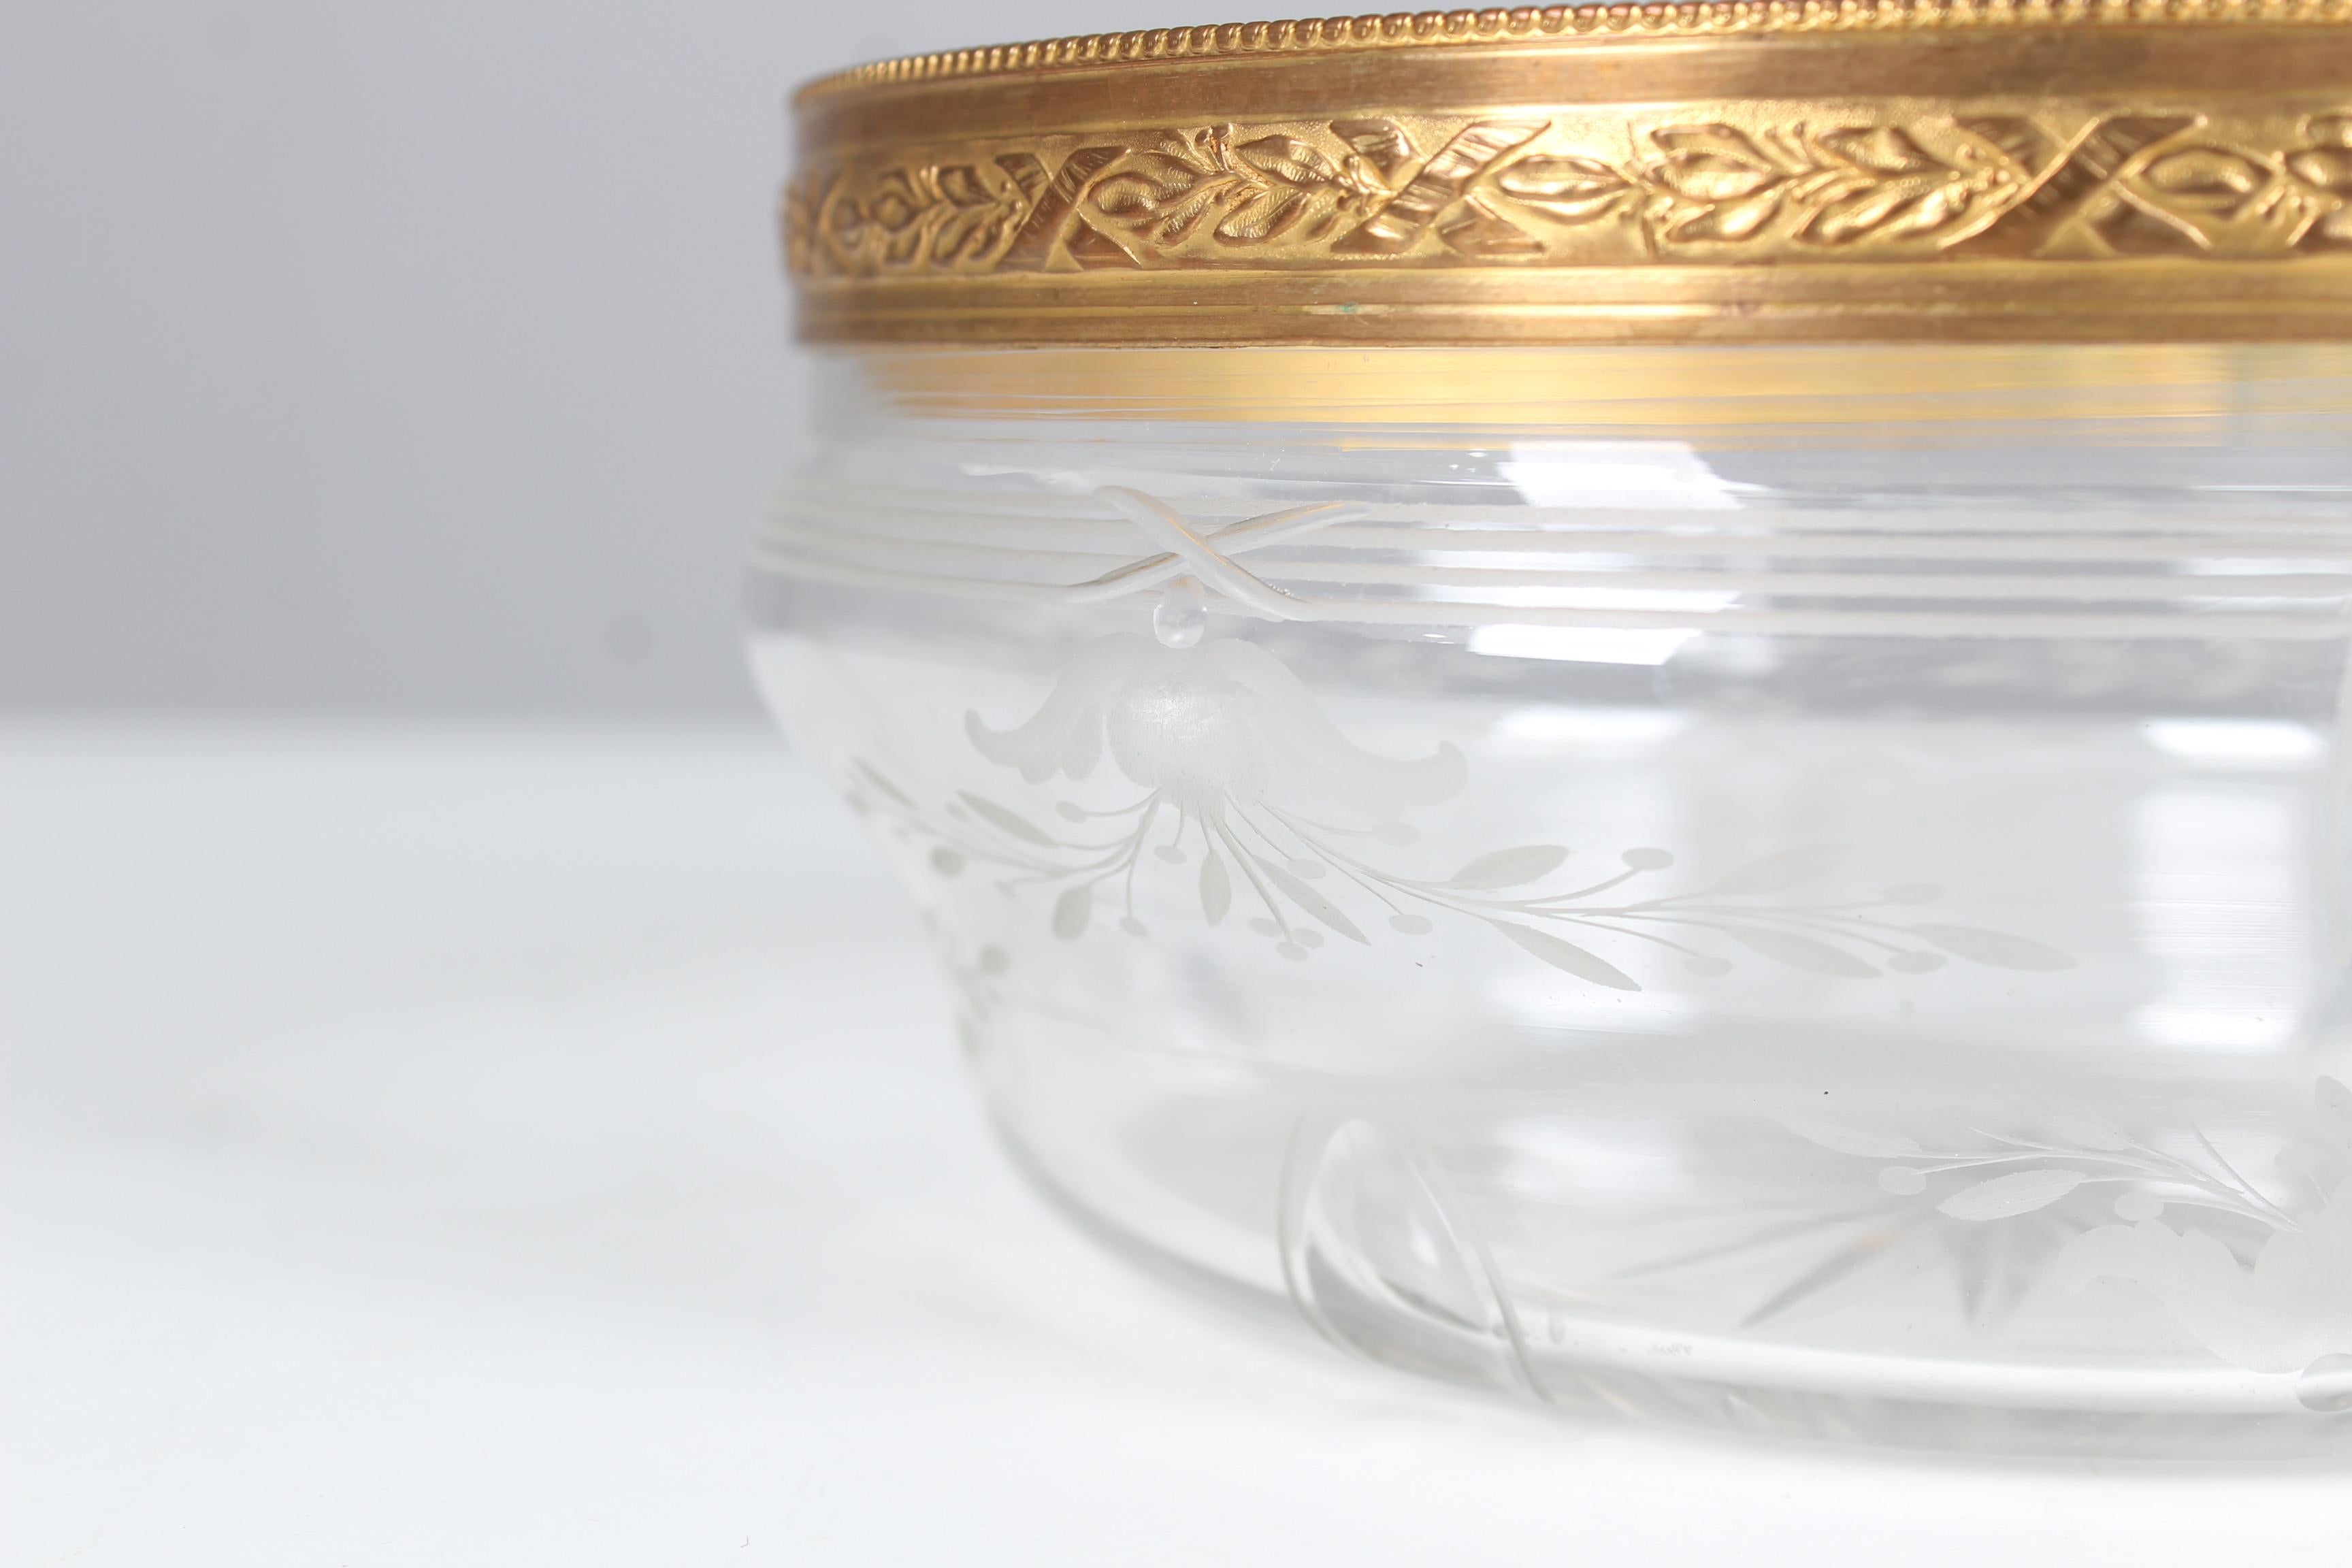 Schöne antike Servierschüssel.
Glas mit Bordure aus Messing.


